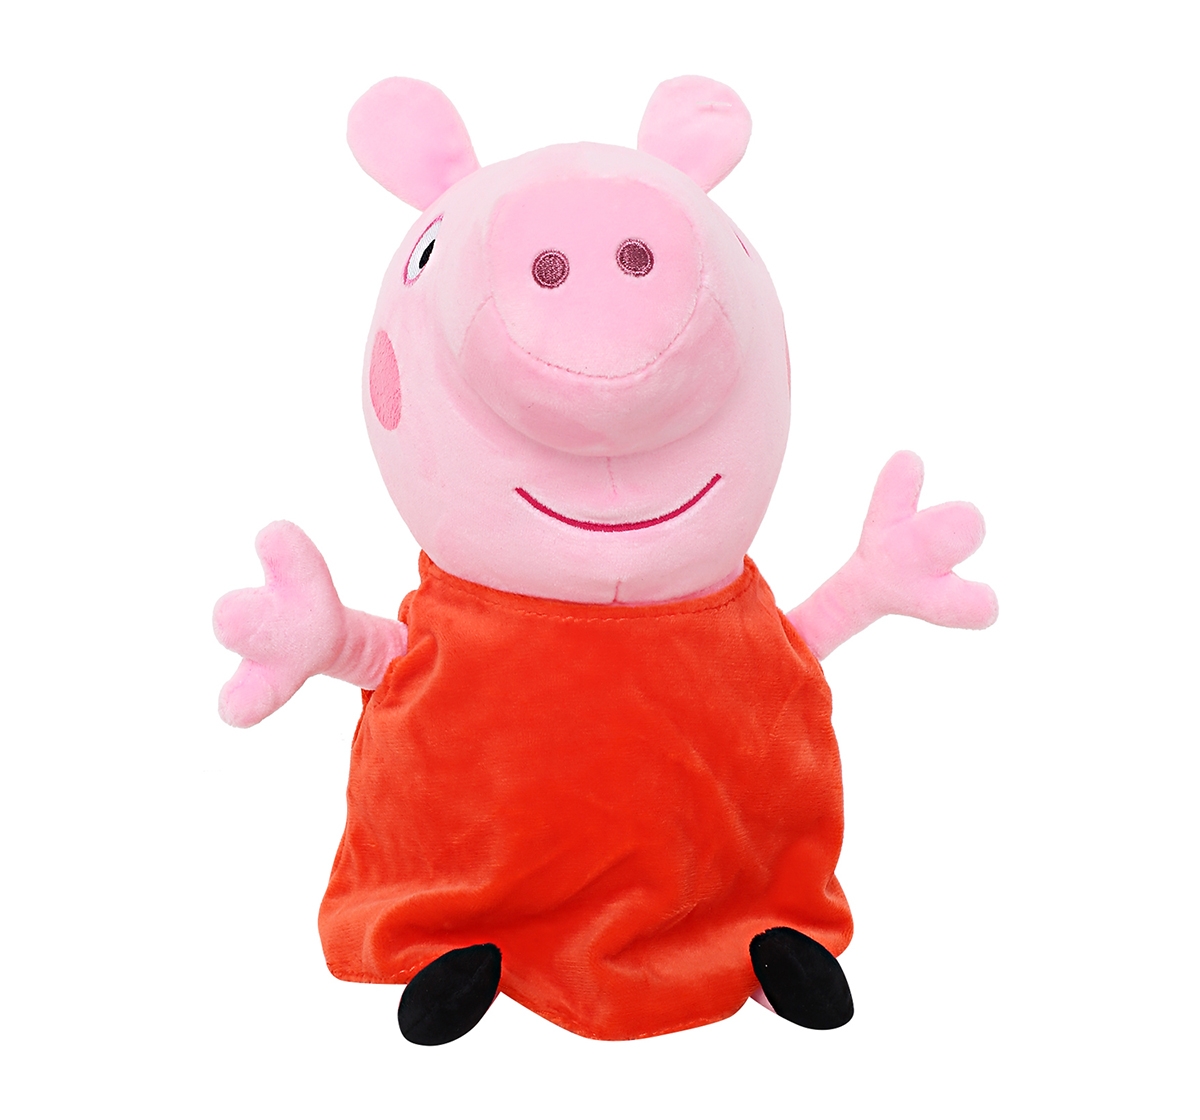 Peppa Pig | Peppa Pig 30 Cm Soft Toy for Kids age 2Y+ (Orange)